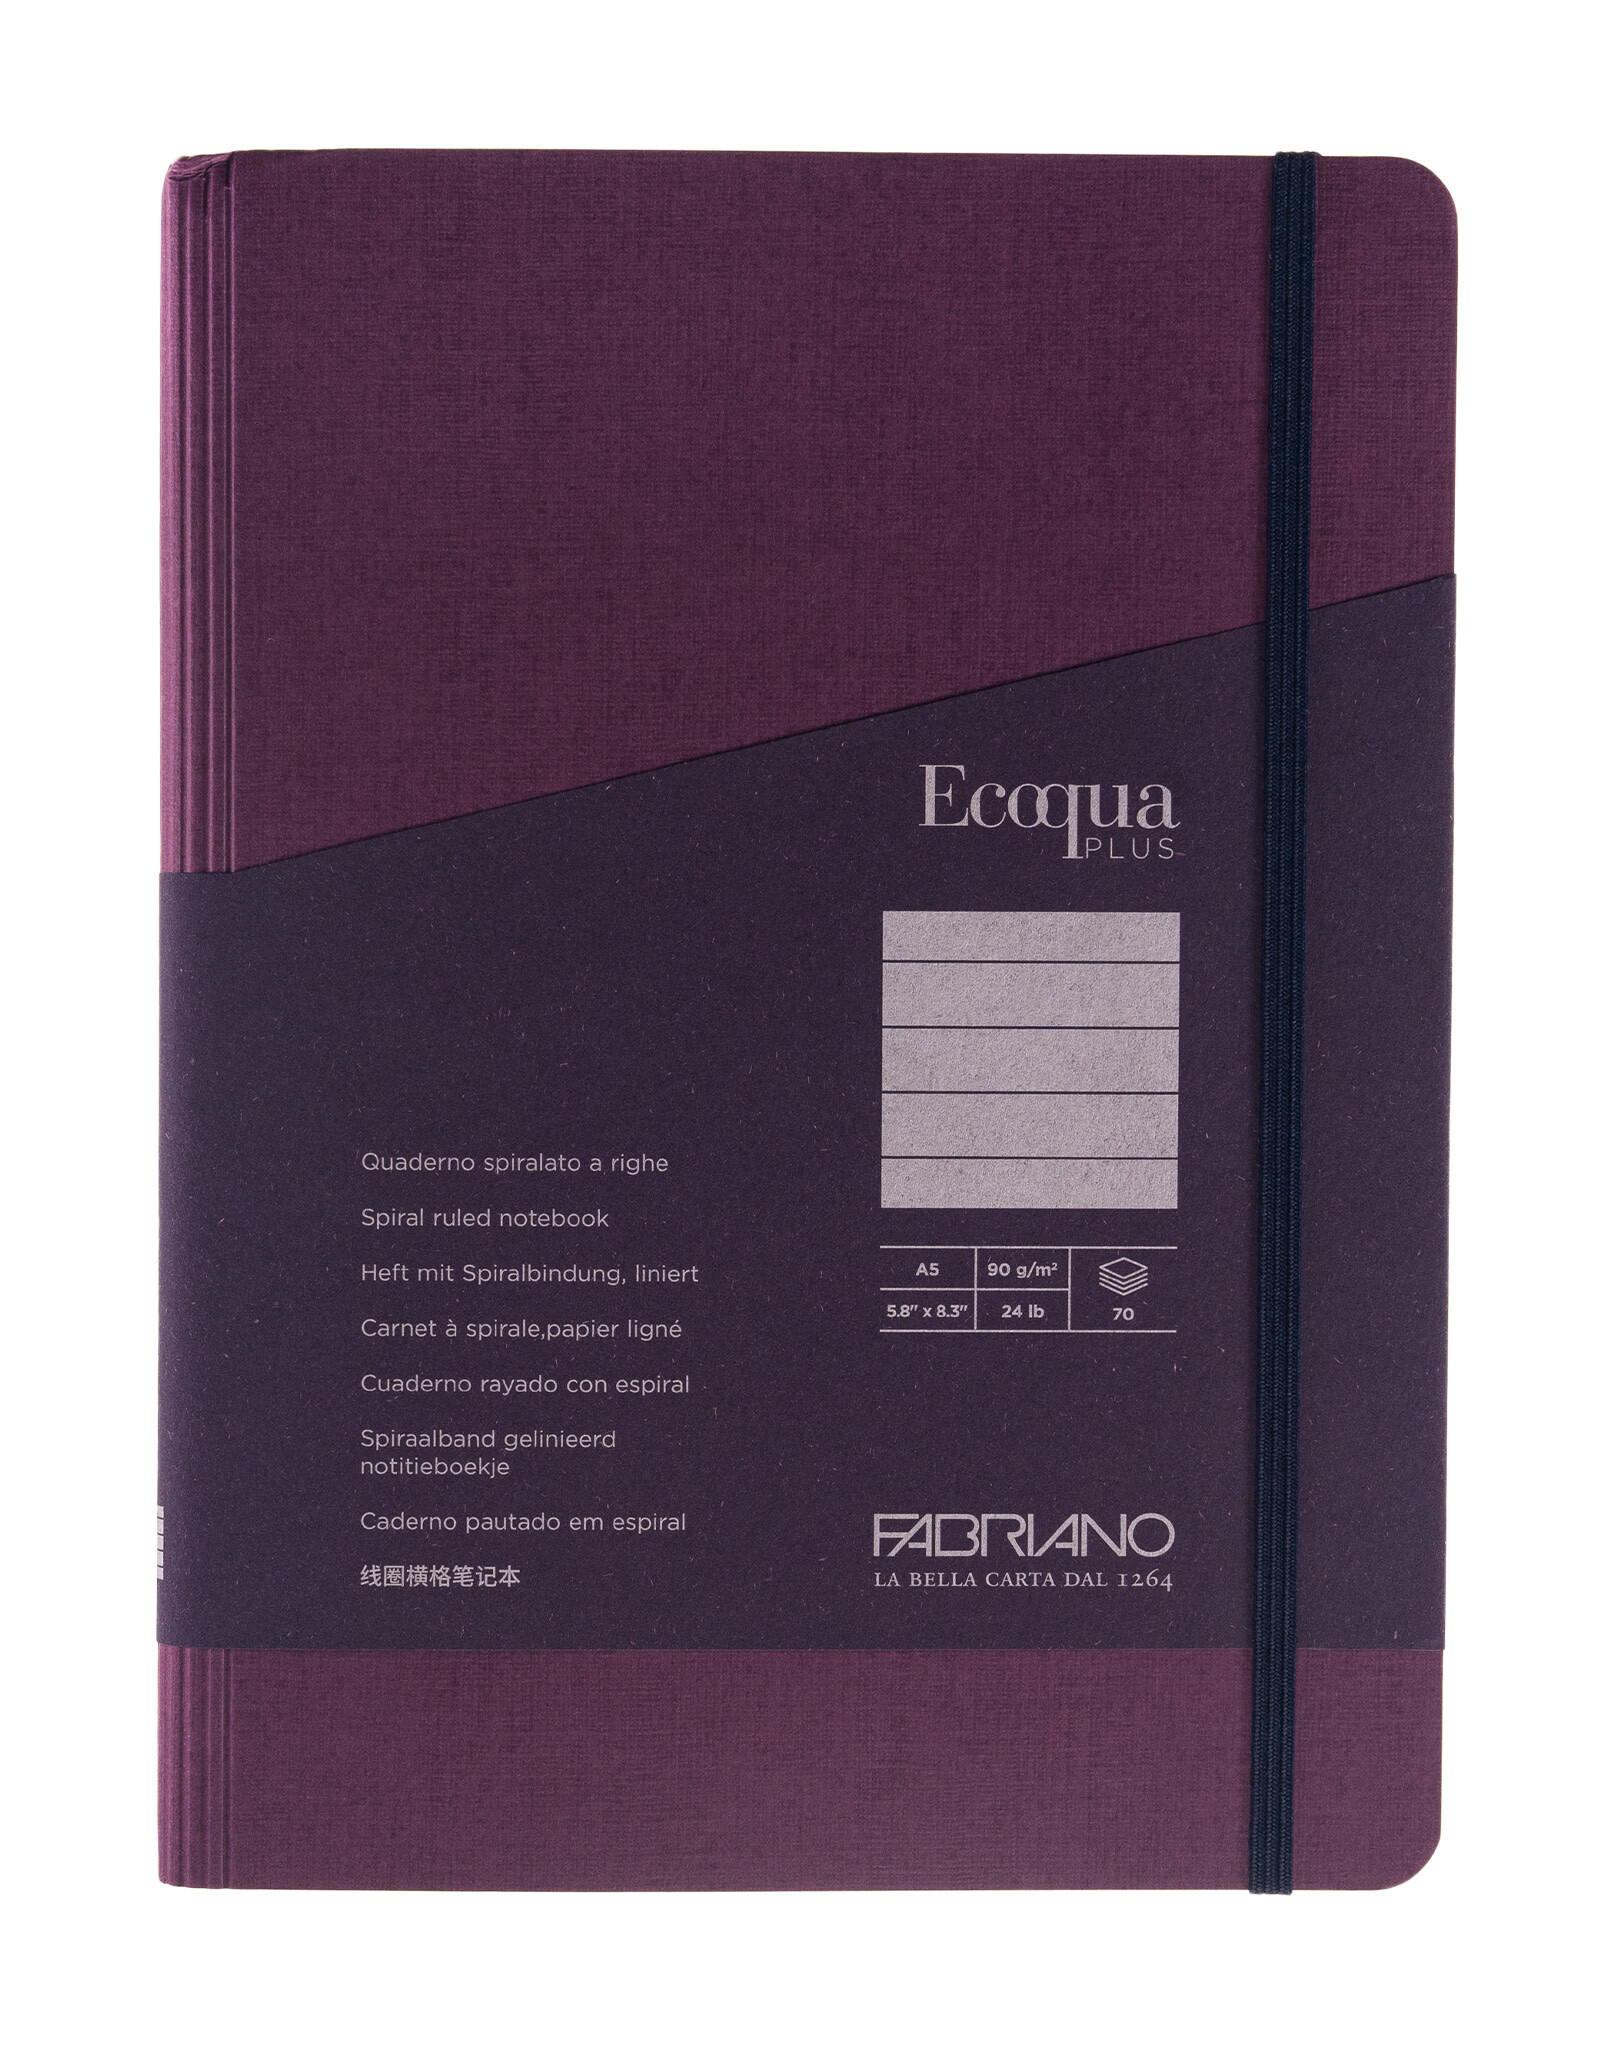 Ecoqua Plus Hidden Spiral Notebook, Wine, A5, Ruled